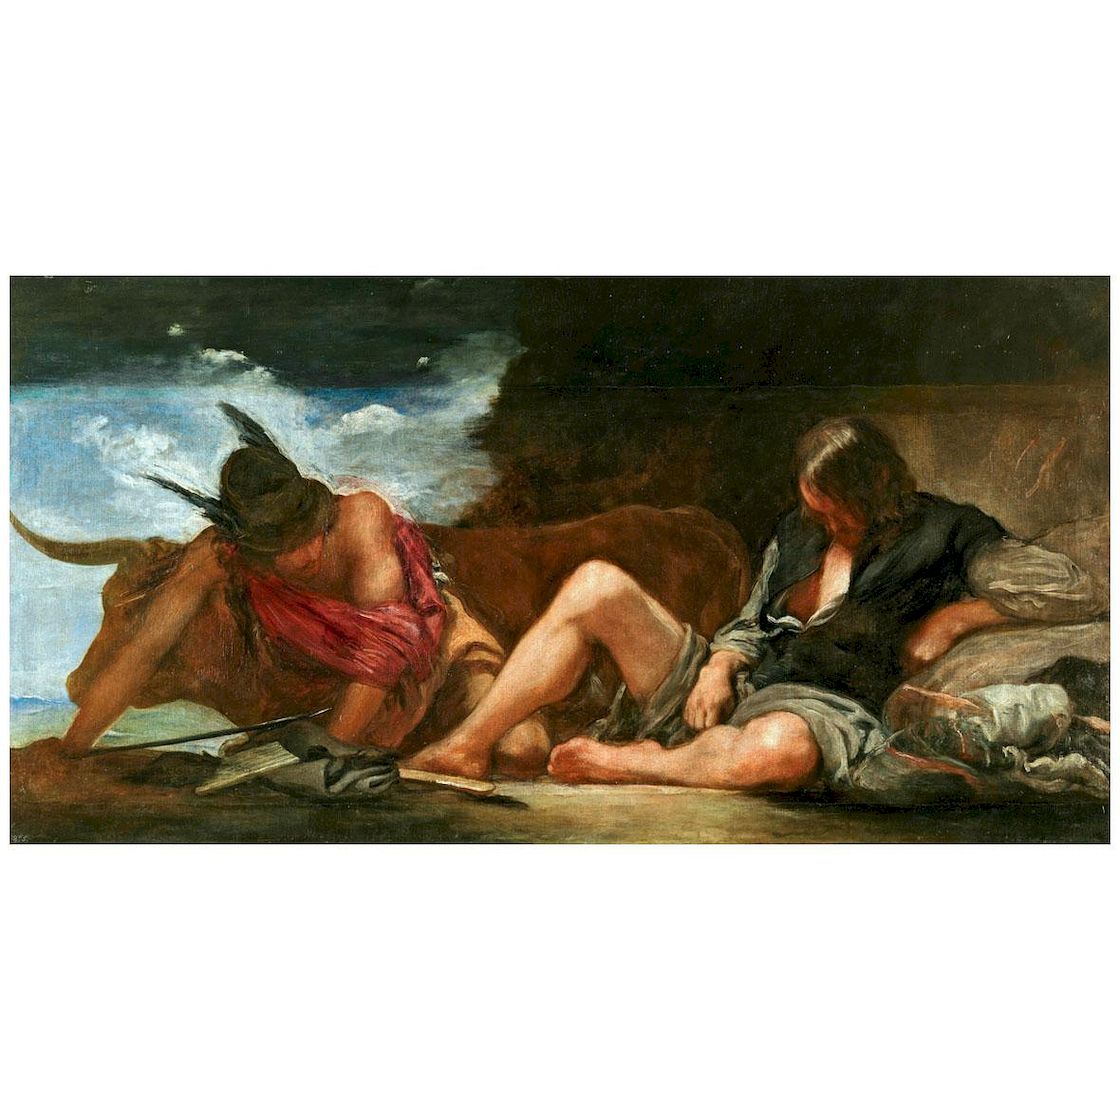 Diego Velazquez. Mercurio y Argos. 1659. Museo del Prado Madrid